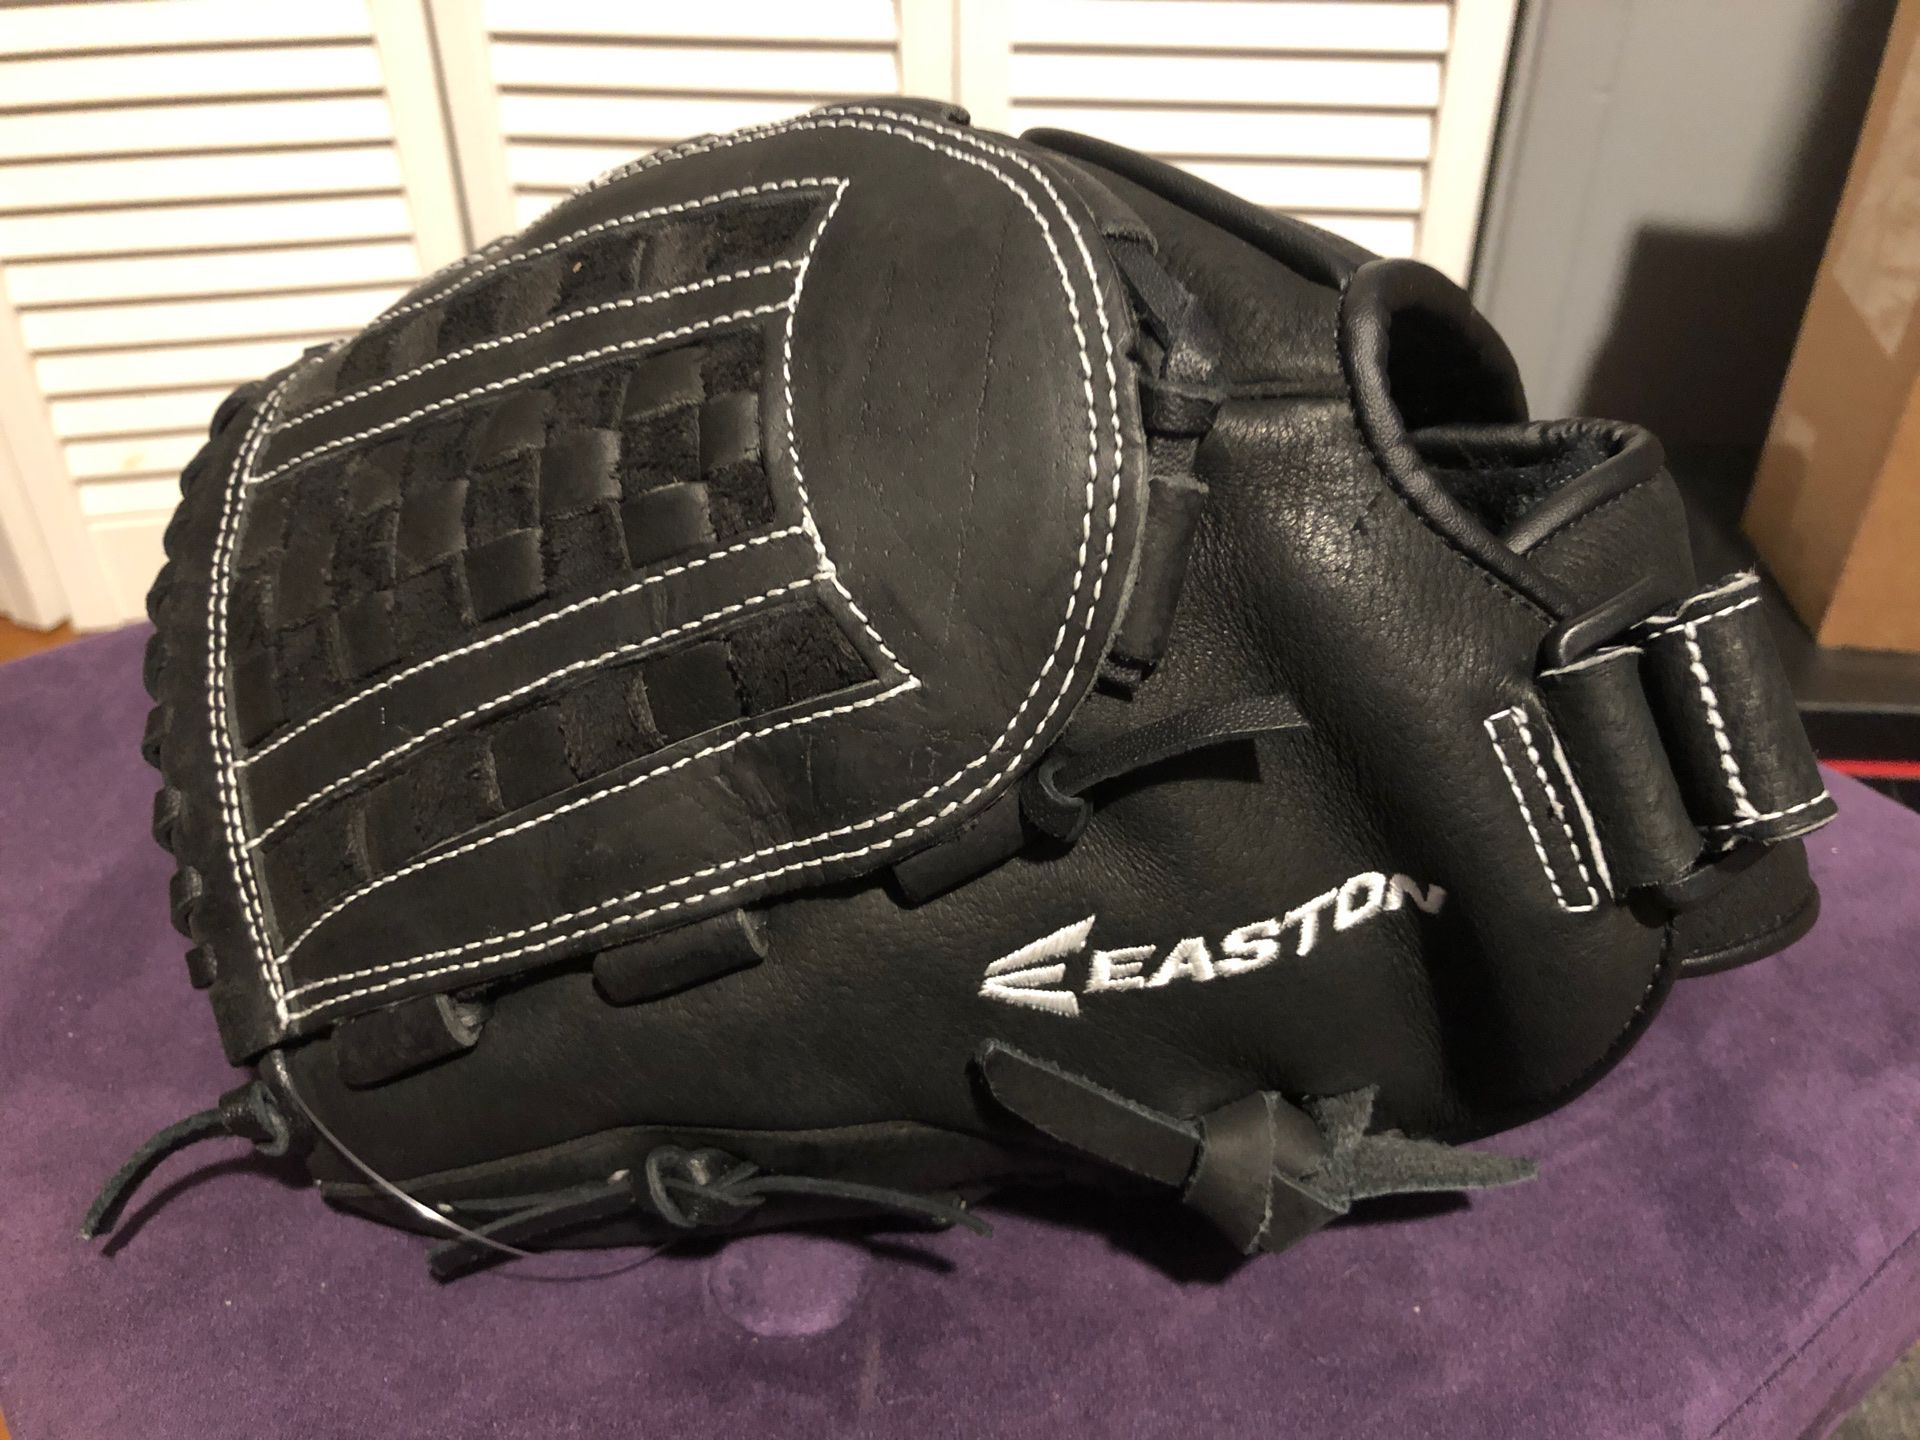 Easton Mako 12.5” LHT glove brand new